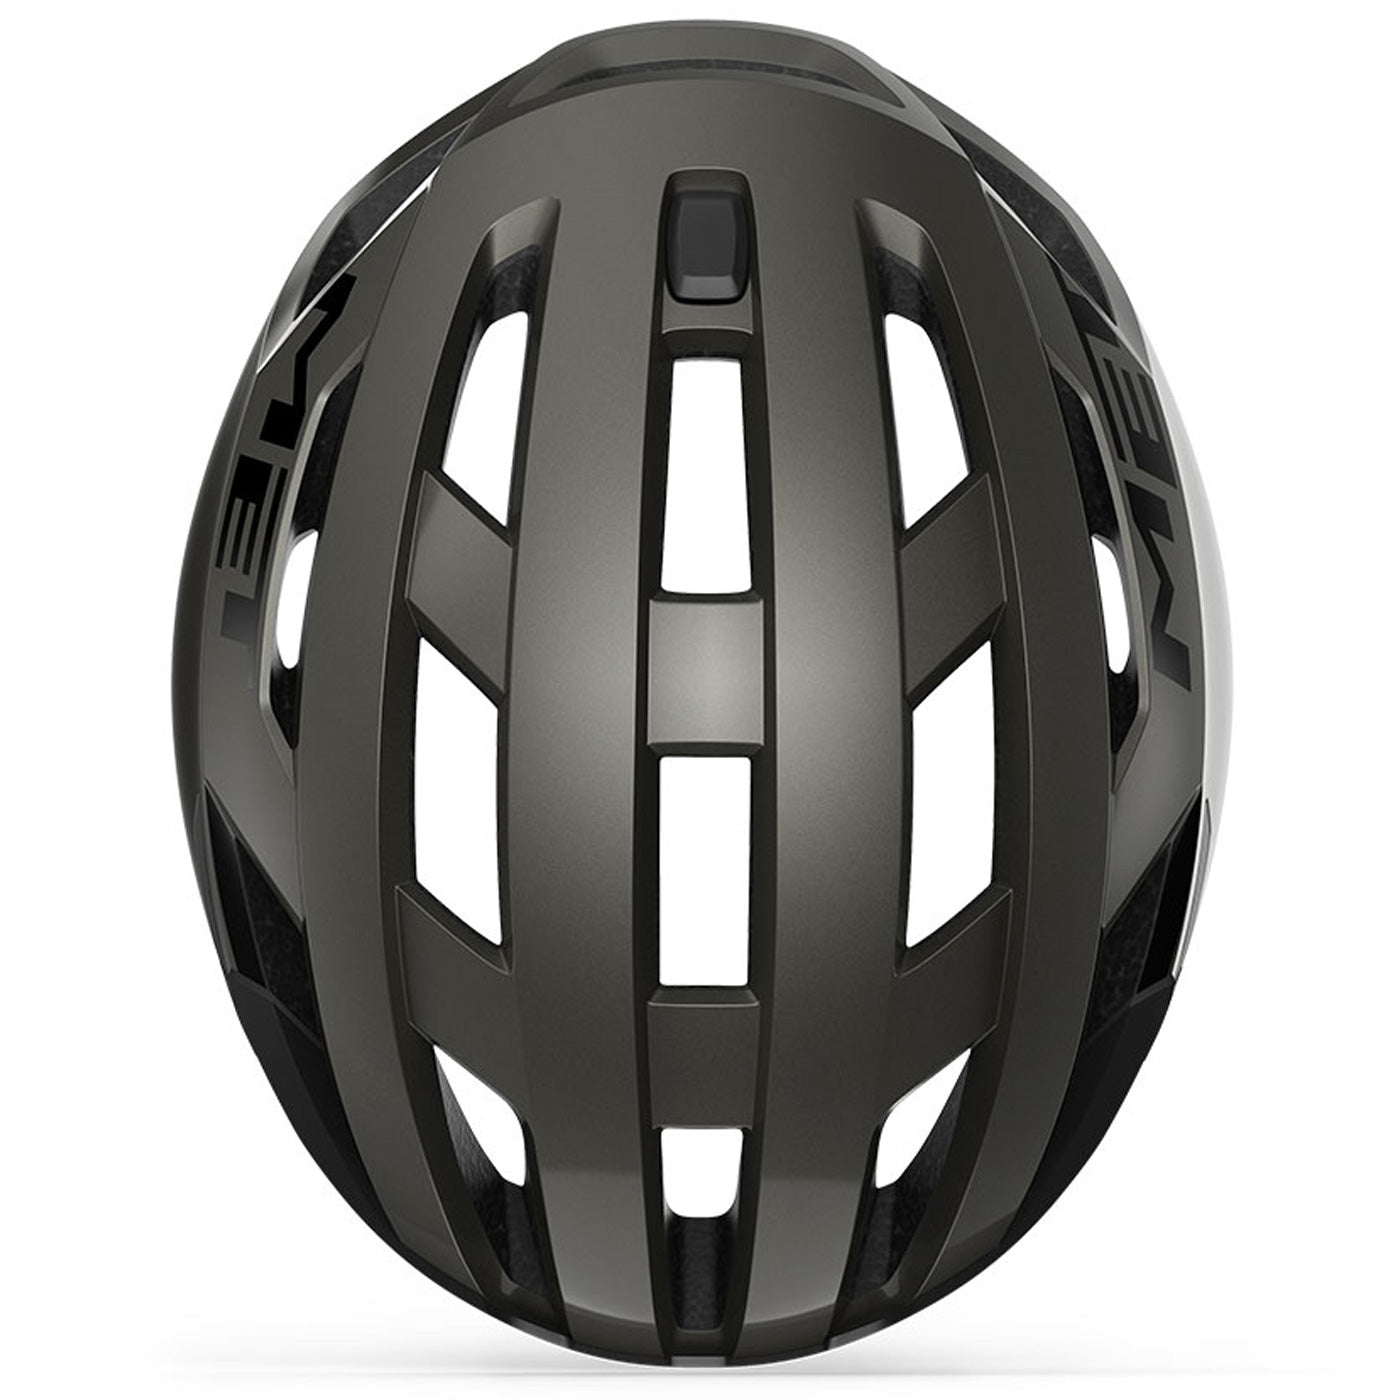 Met Vinci Mips helmets - Grey | All4cycling